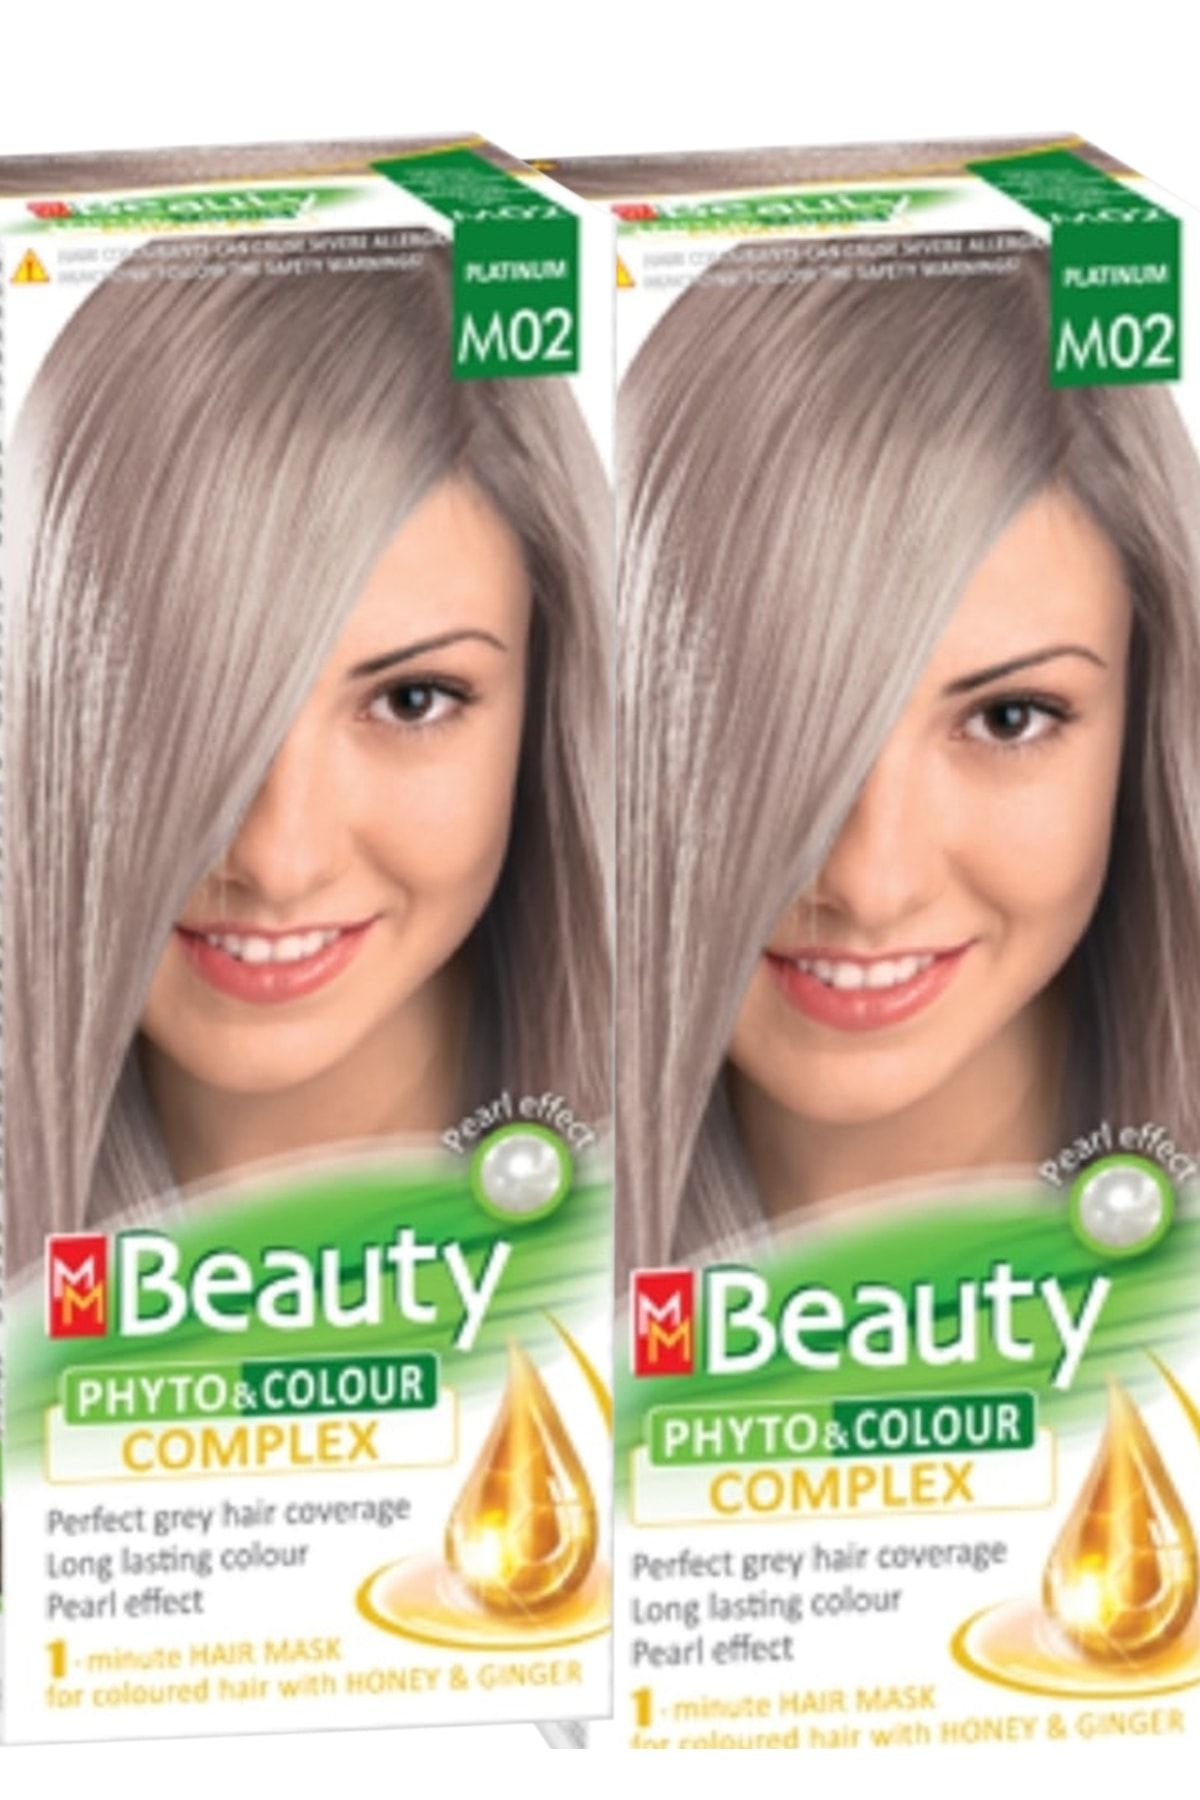 MM Beauty Saç Boyası M02 ( Platin ) Set Boya 2'li Set